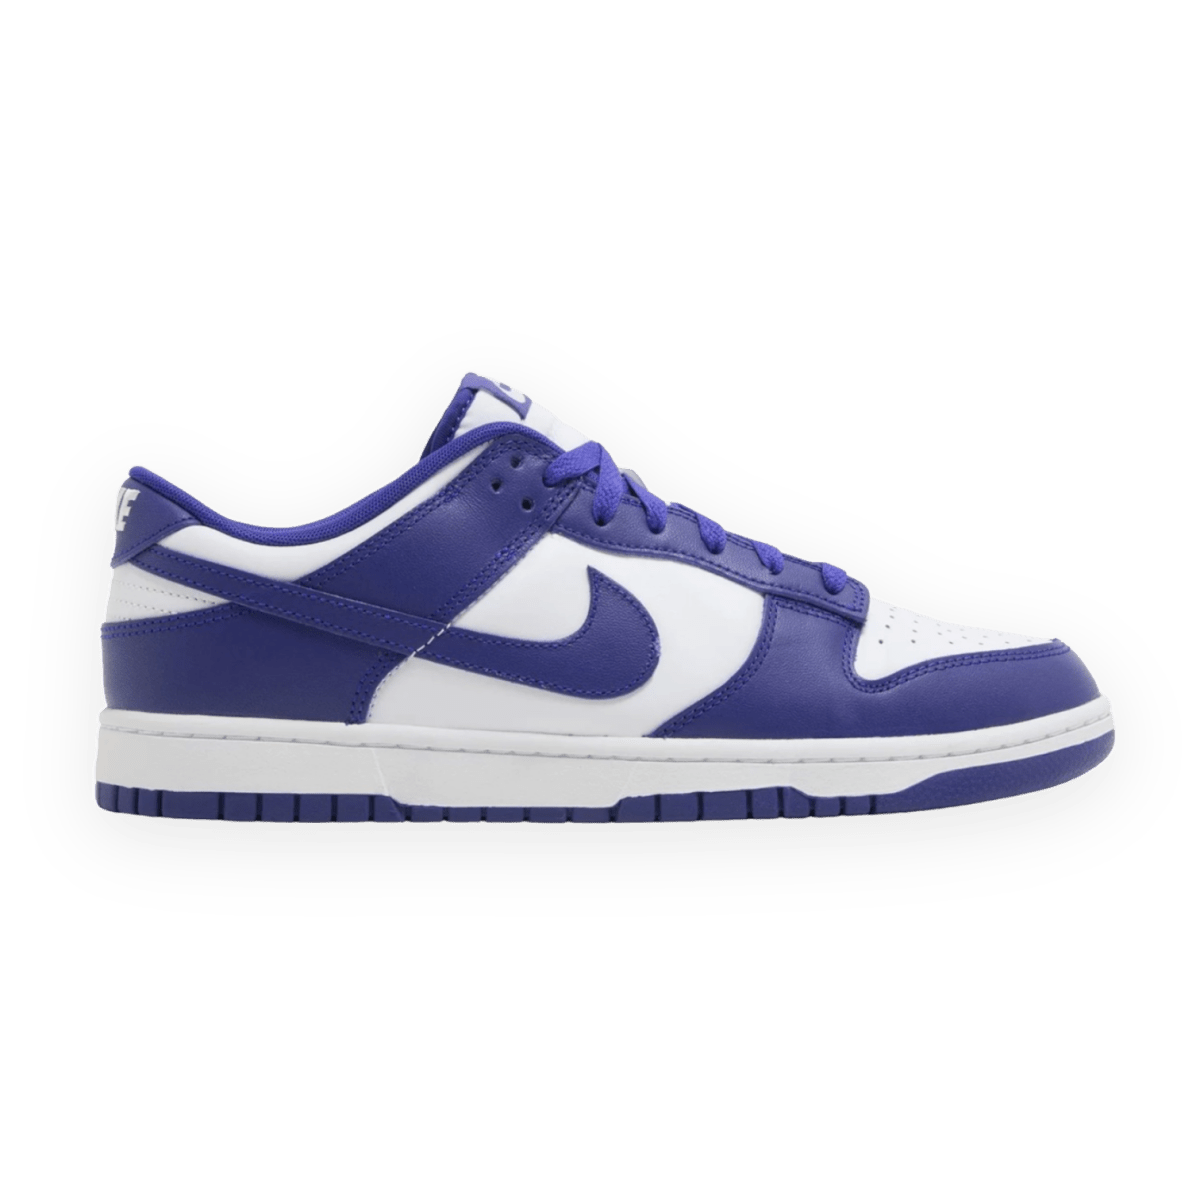 Dunk Low Concord Purple - Low Sneaker - Jawns on Fire Sneakers & Streetwear